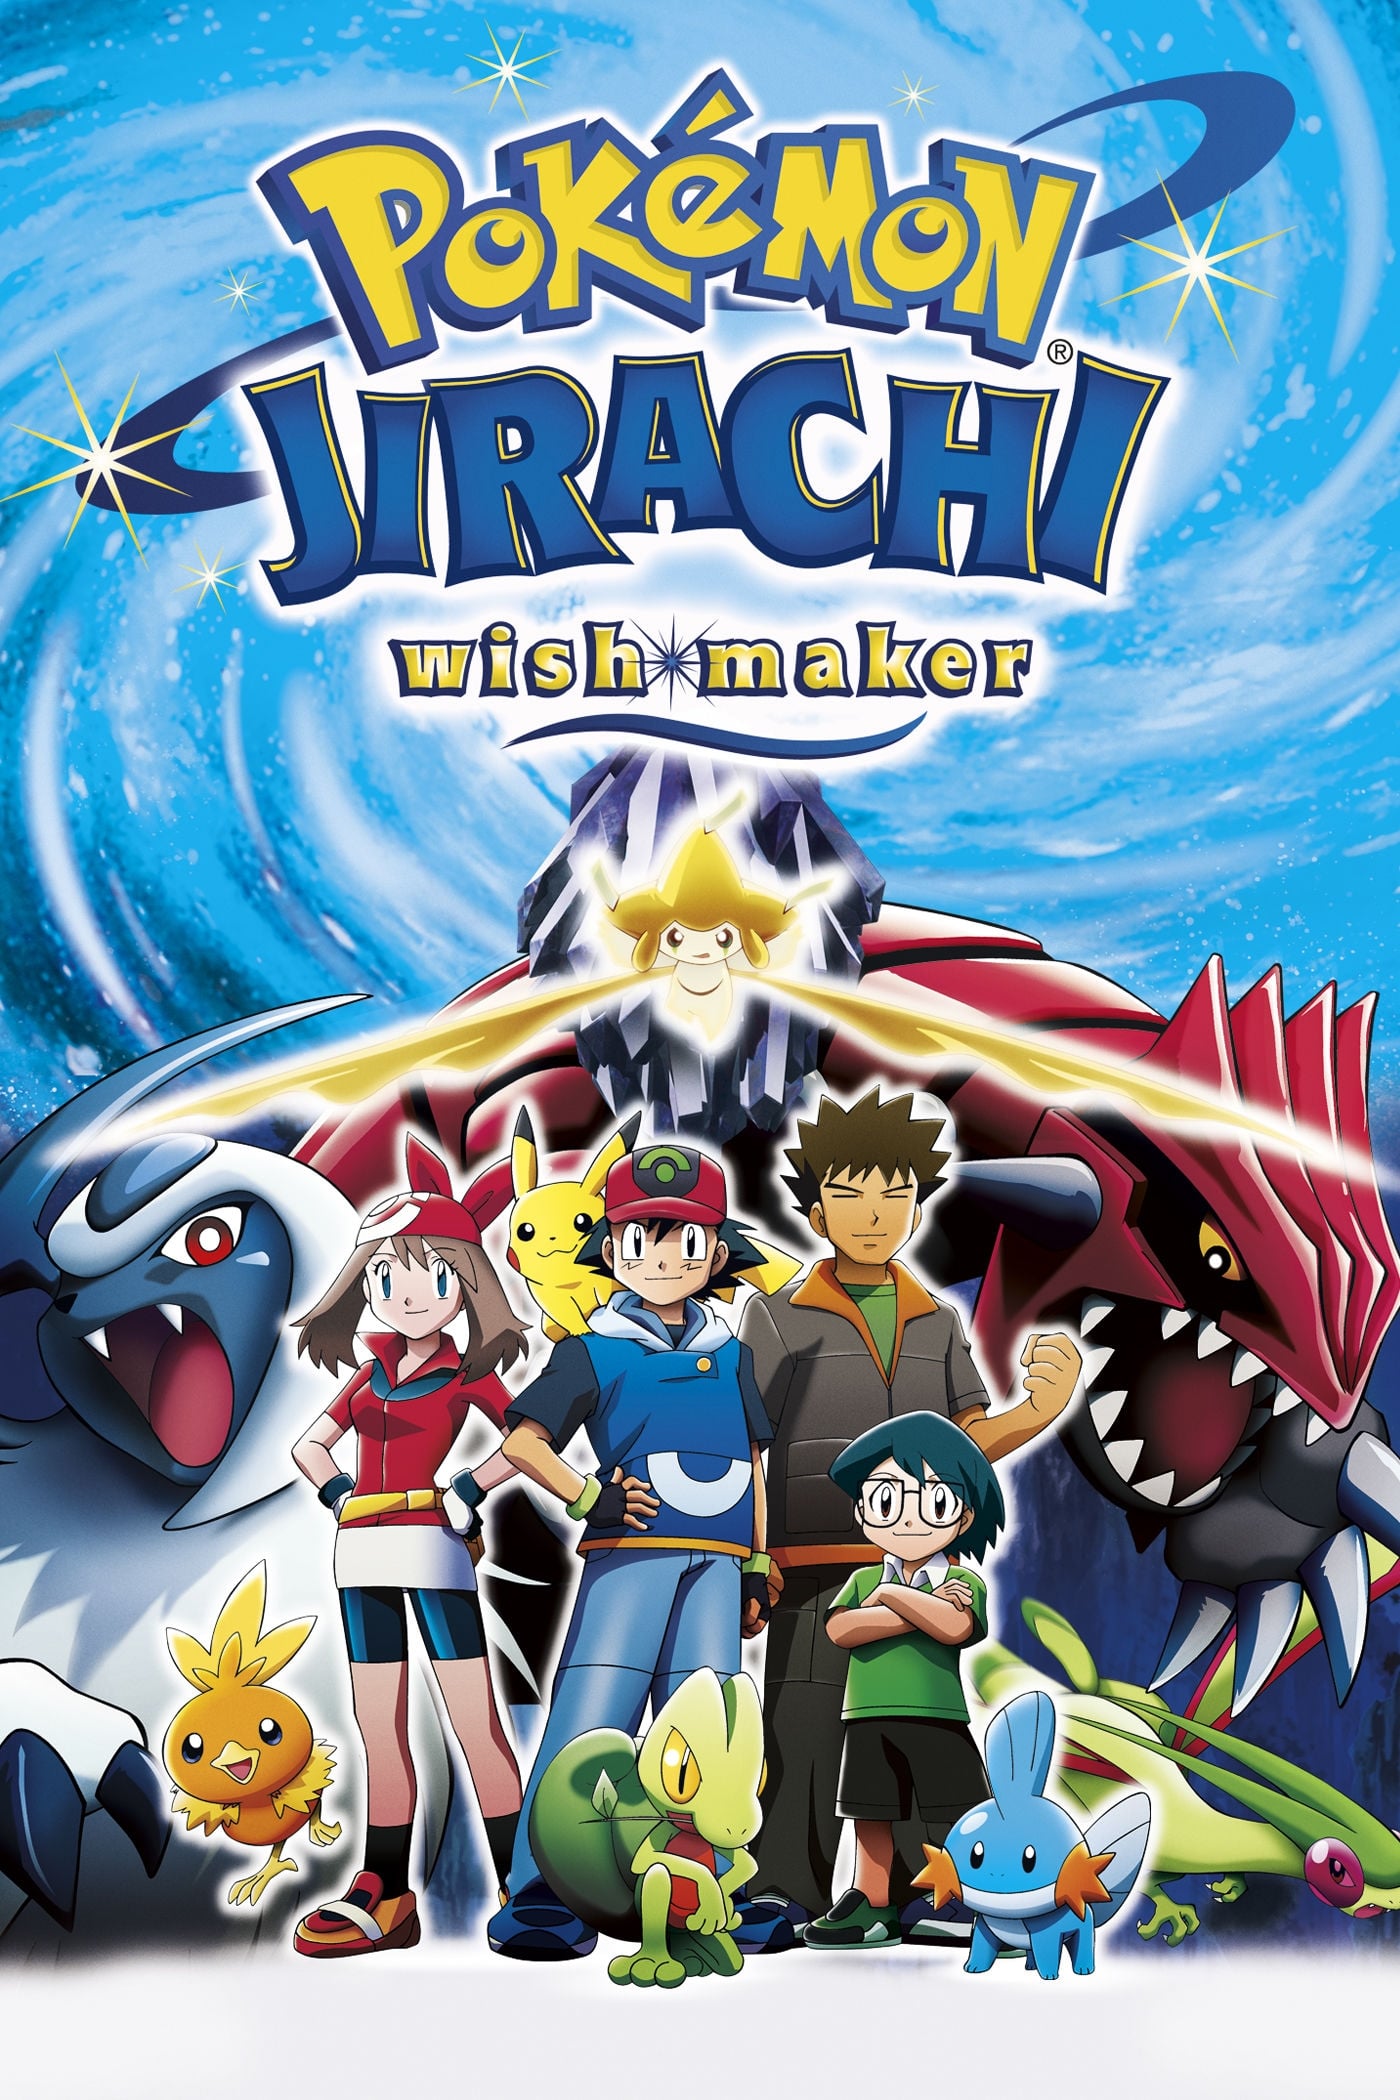 Pokémon: Jirachi y los deseos (2003)